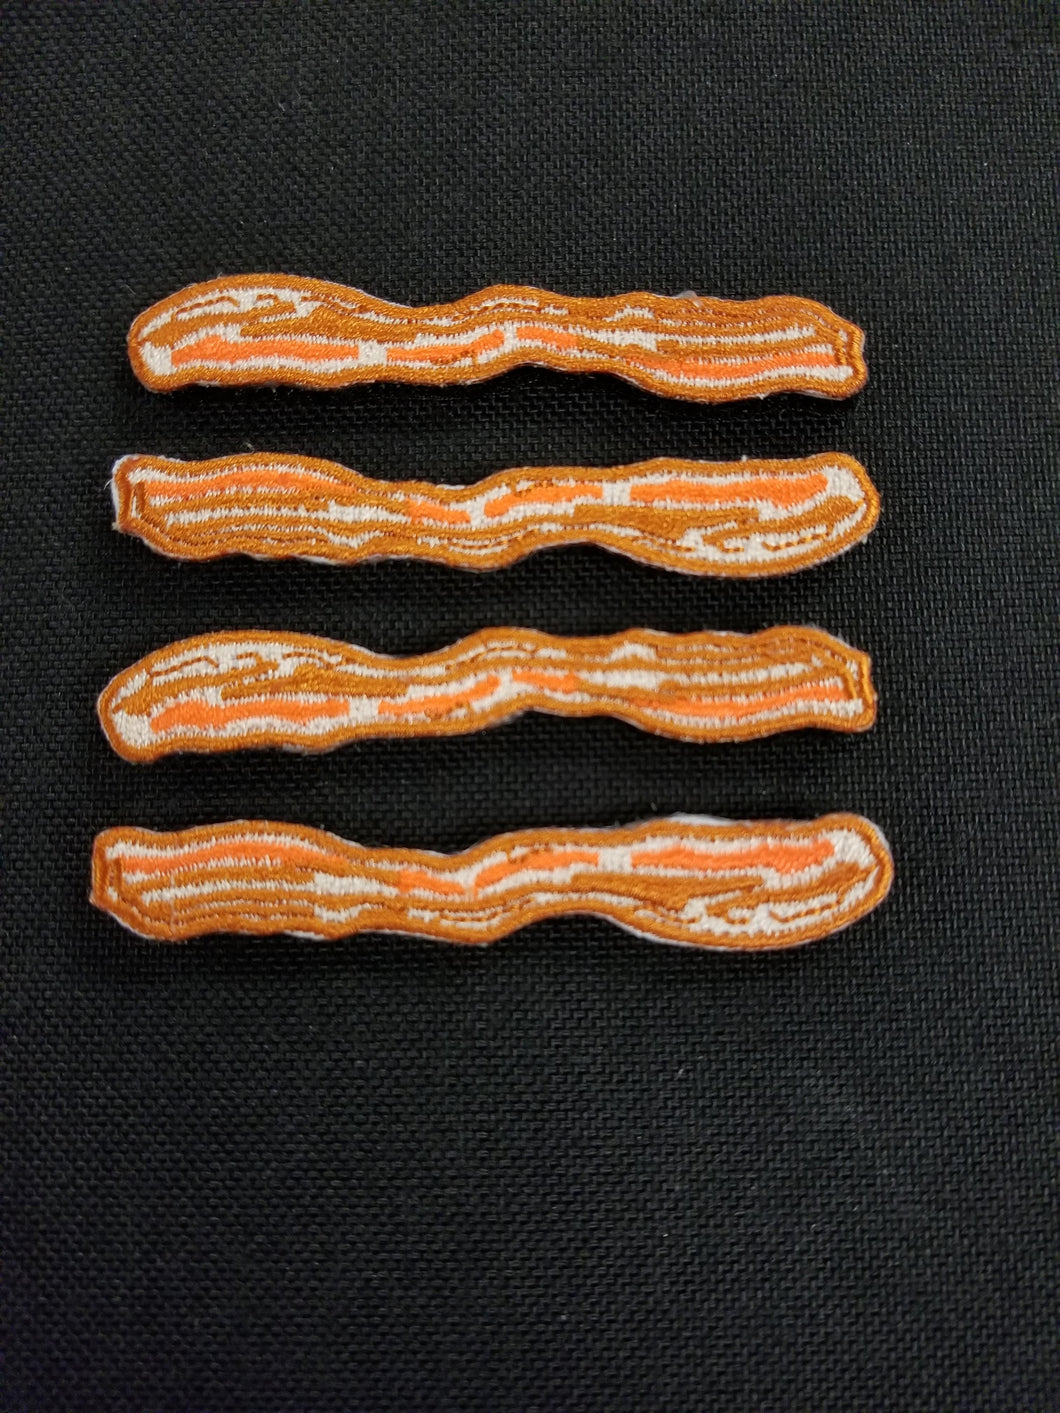 Micro Bacon